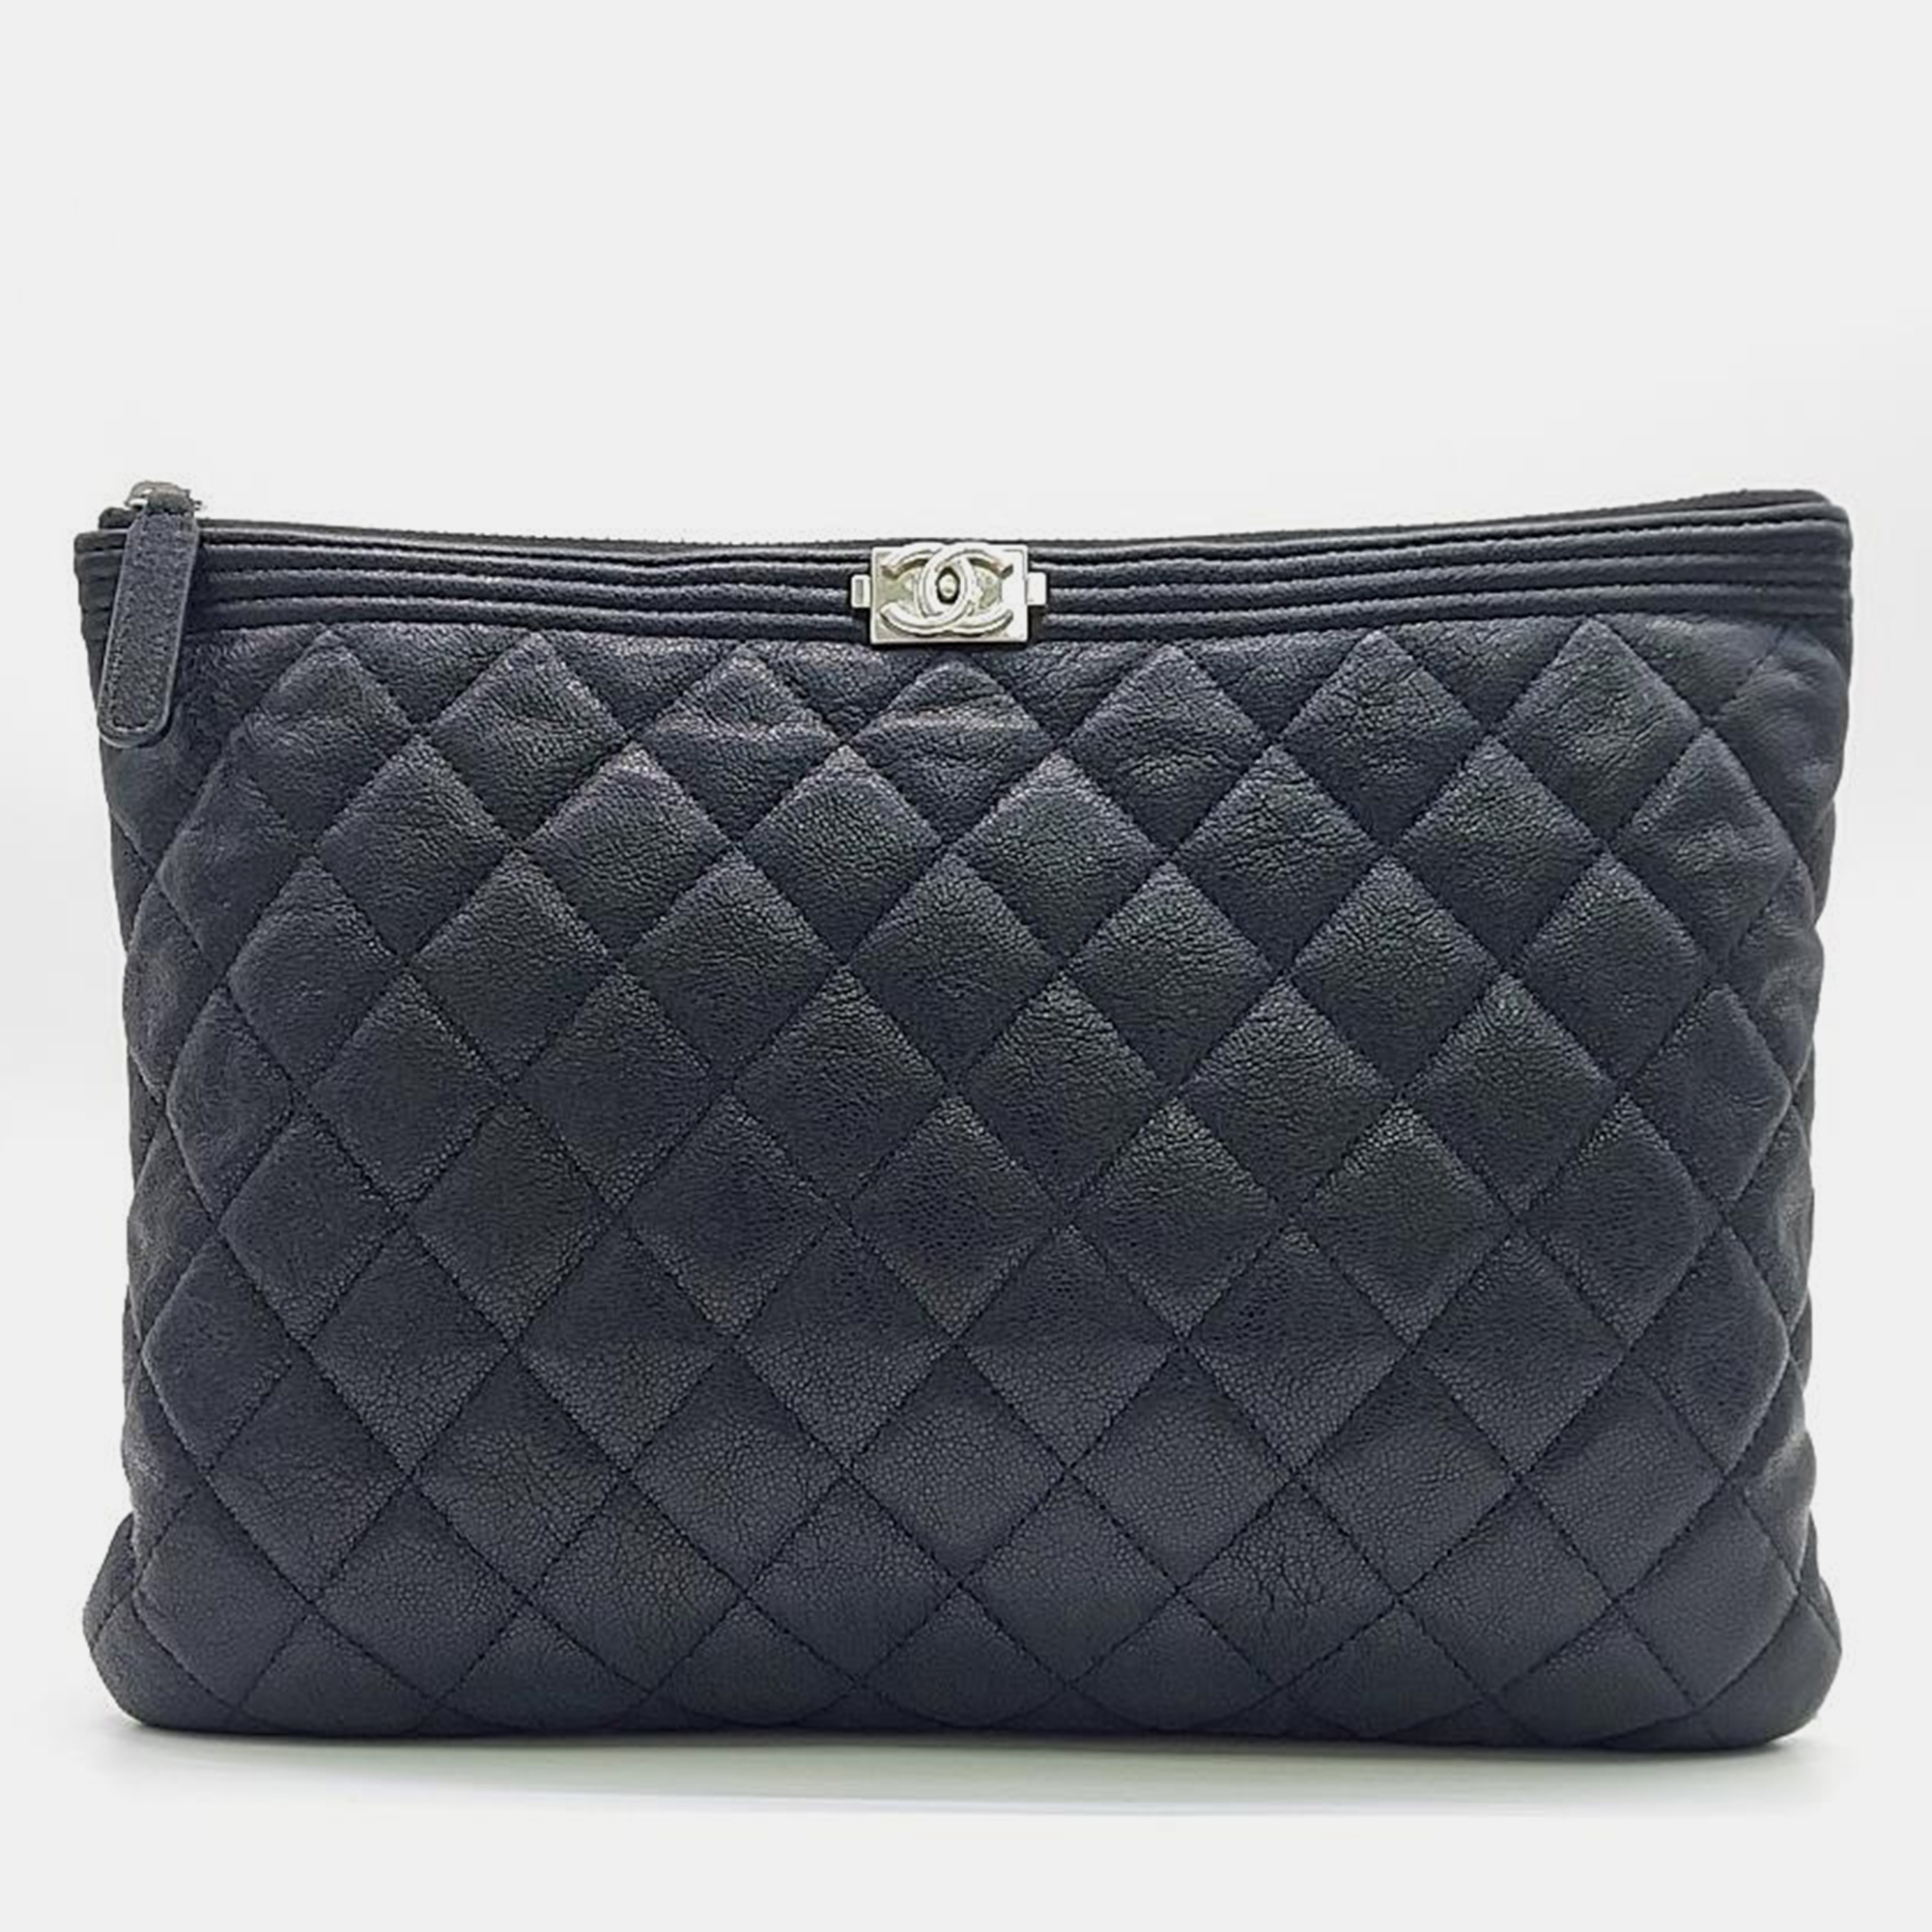 Chanel black caviar leather medium boy clutch bag